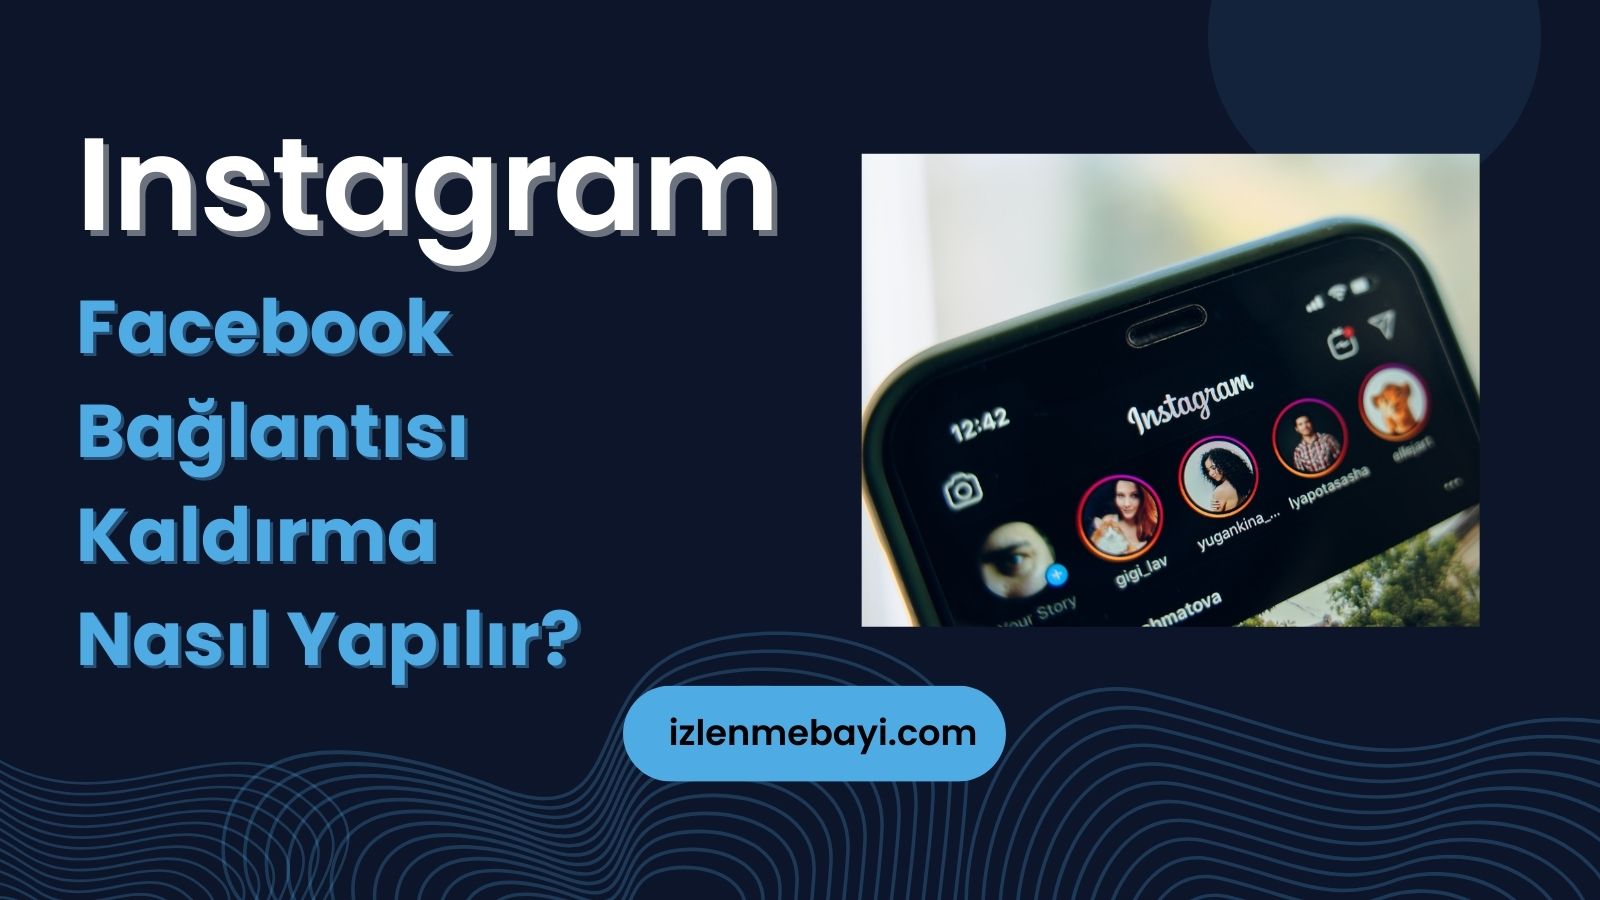 Instagram’dan Facebook Bağlantısı Kaldırma Nasıl Yapılır?